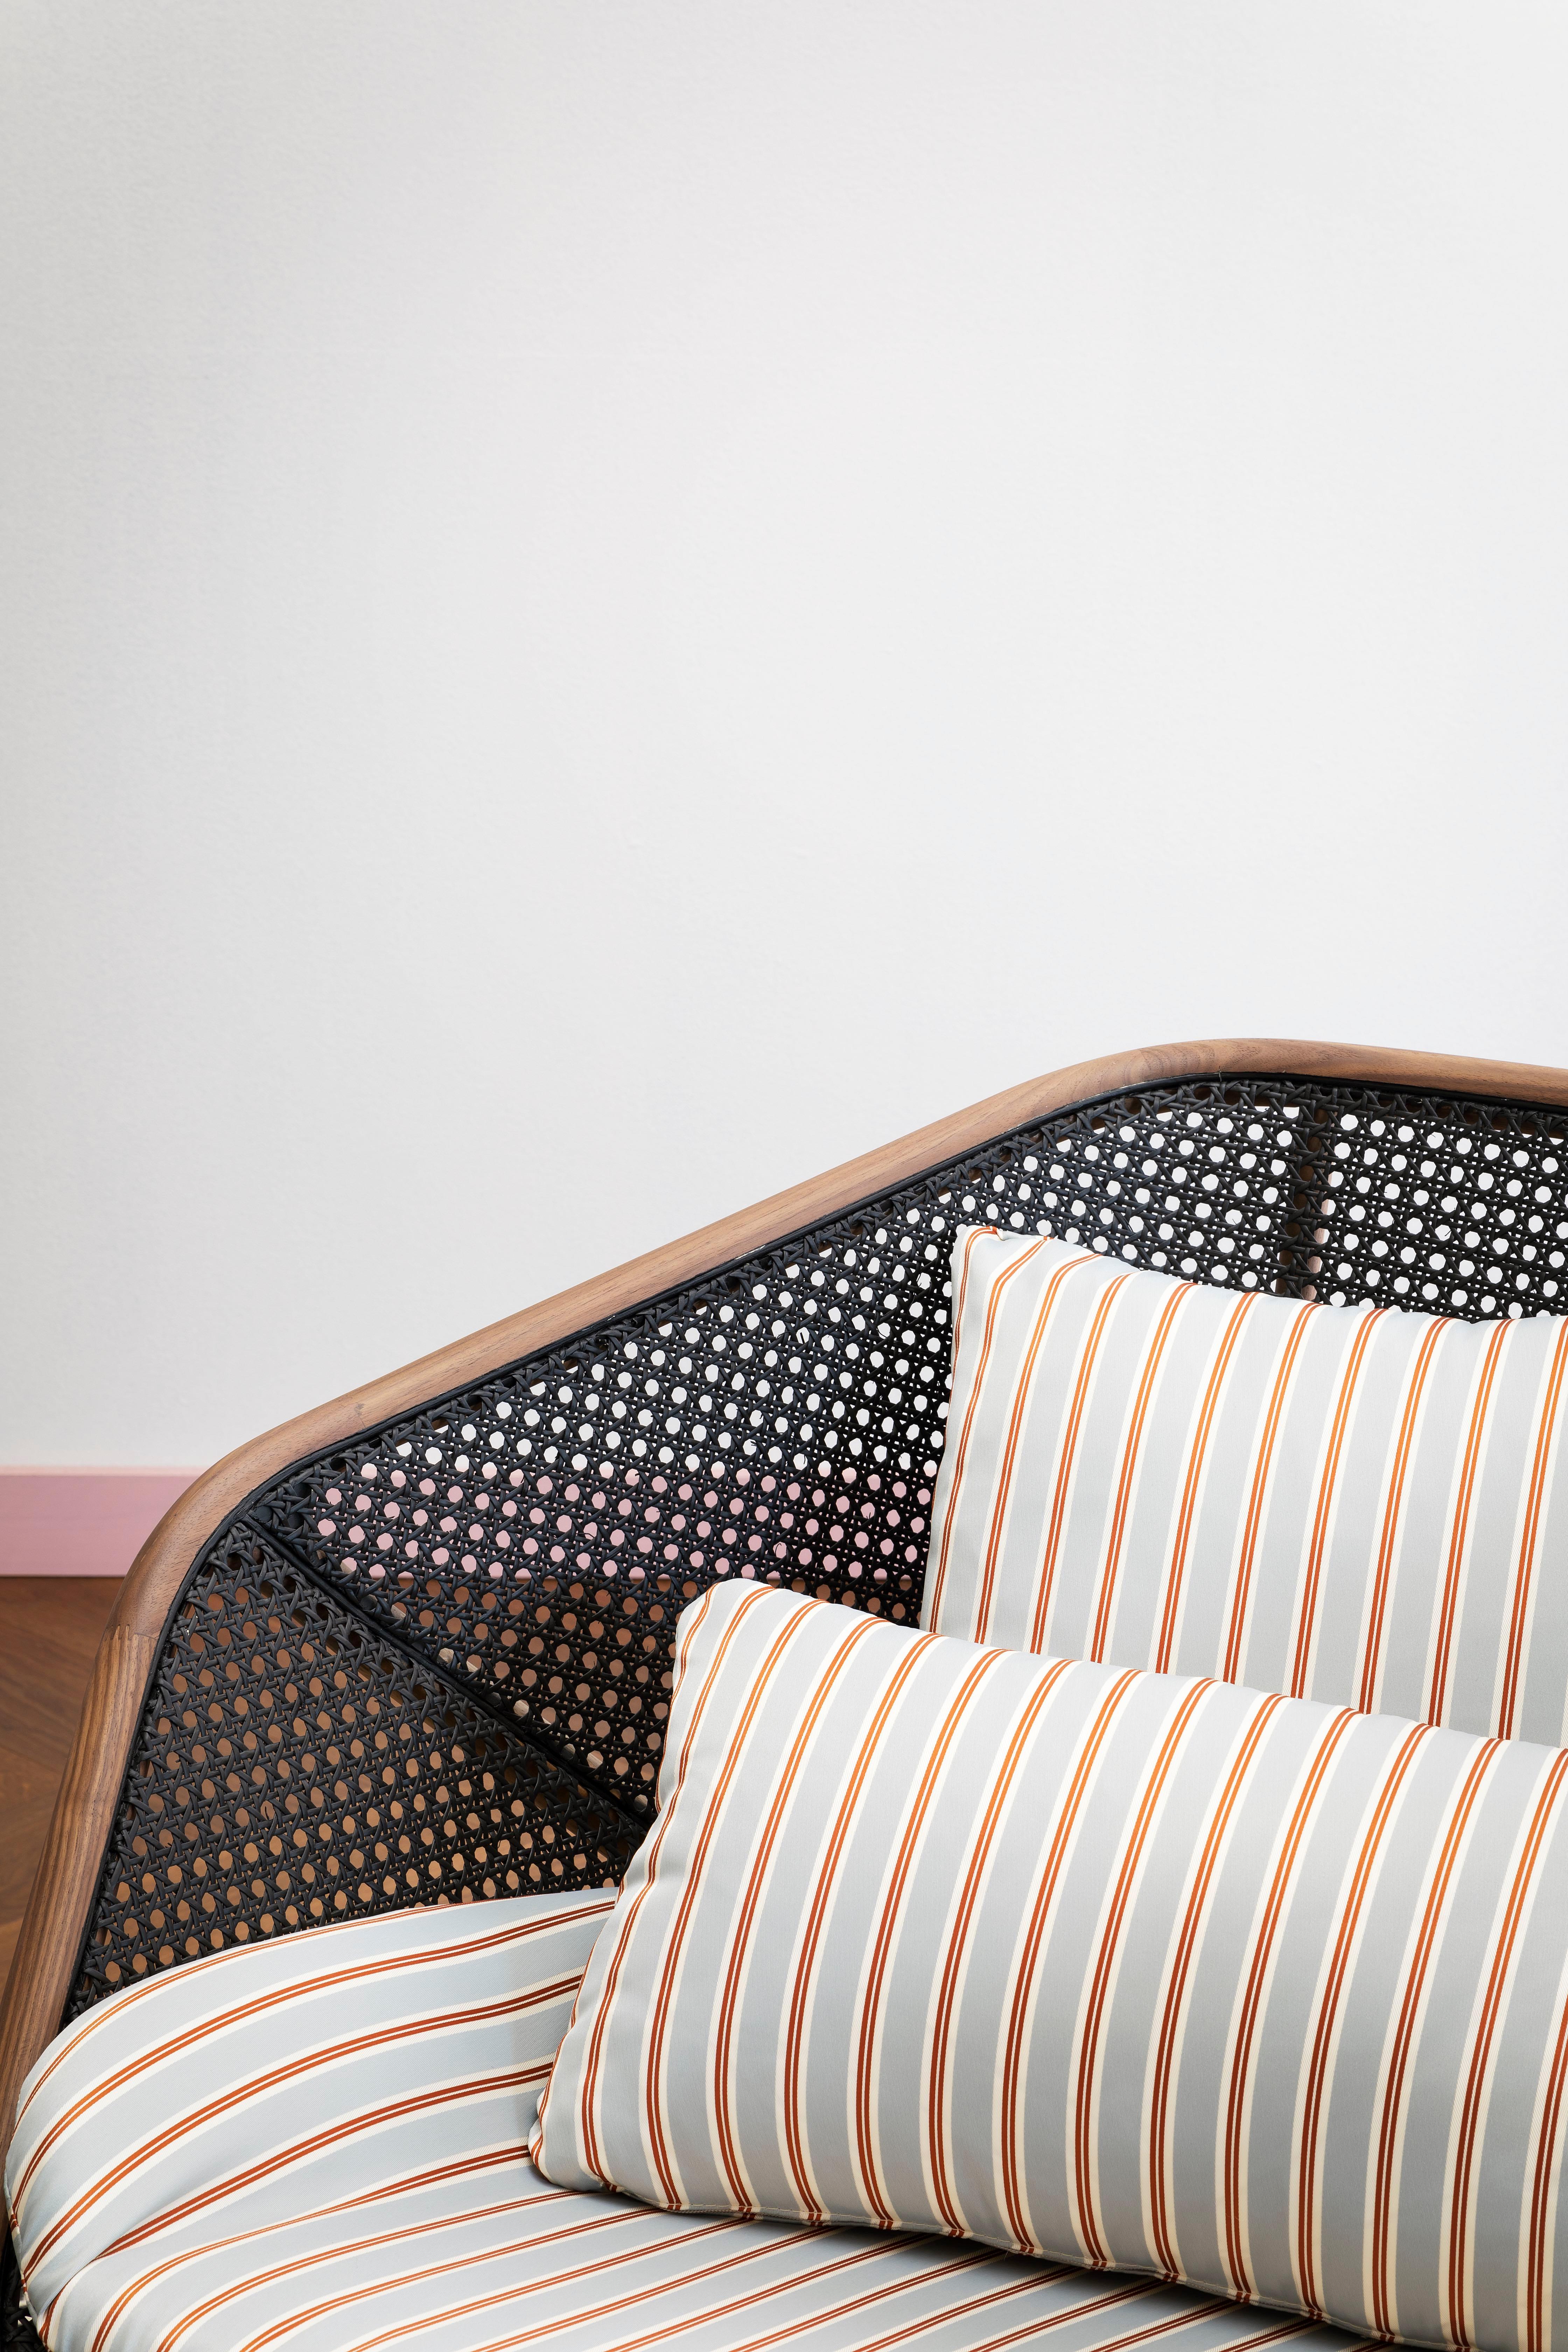 Le fauteuil Colony avec base métallique vernie est proposé ici en noir, mais il est également disponible en blanc, gris soie, gris poussière, bleu intense ou bronze. La structure est proposée en hêtre naturel, et disponible pour les commandes